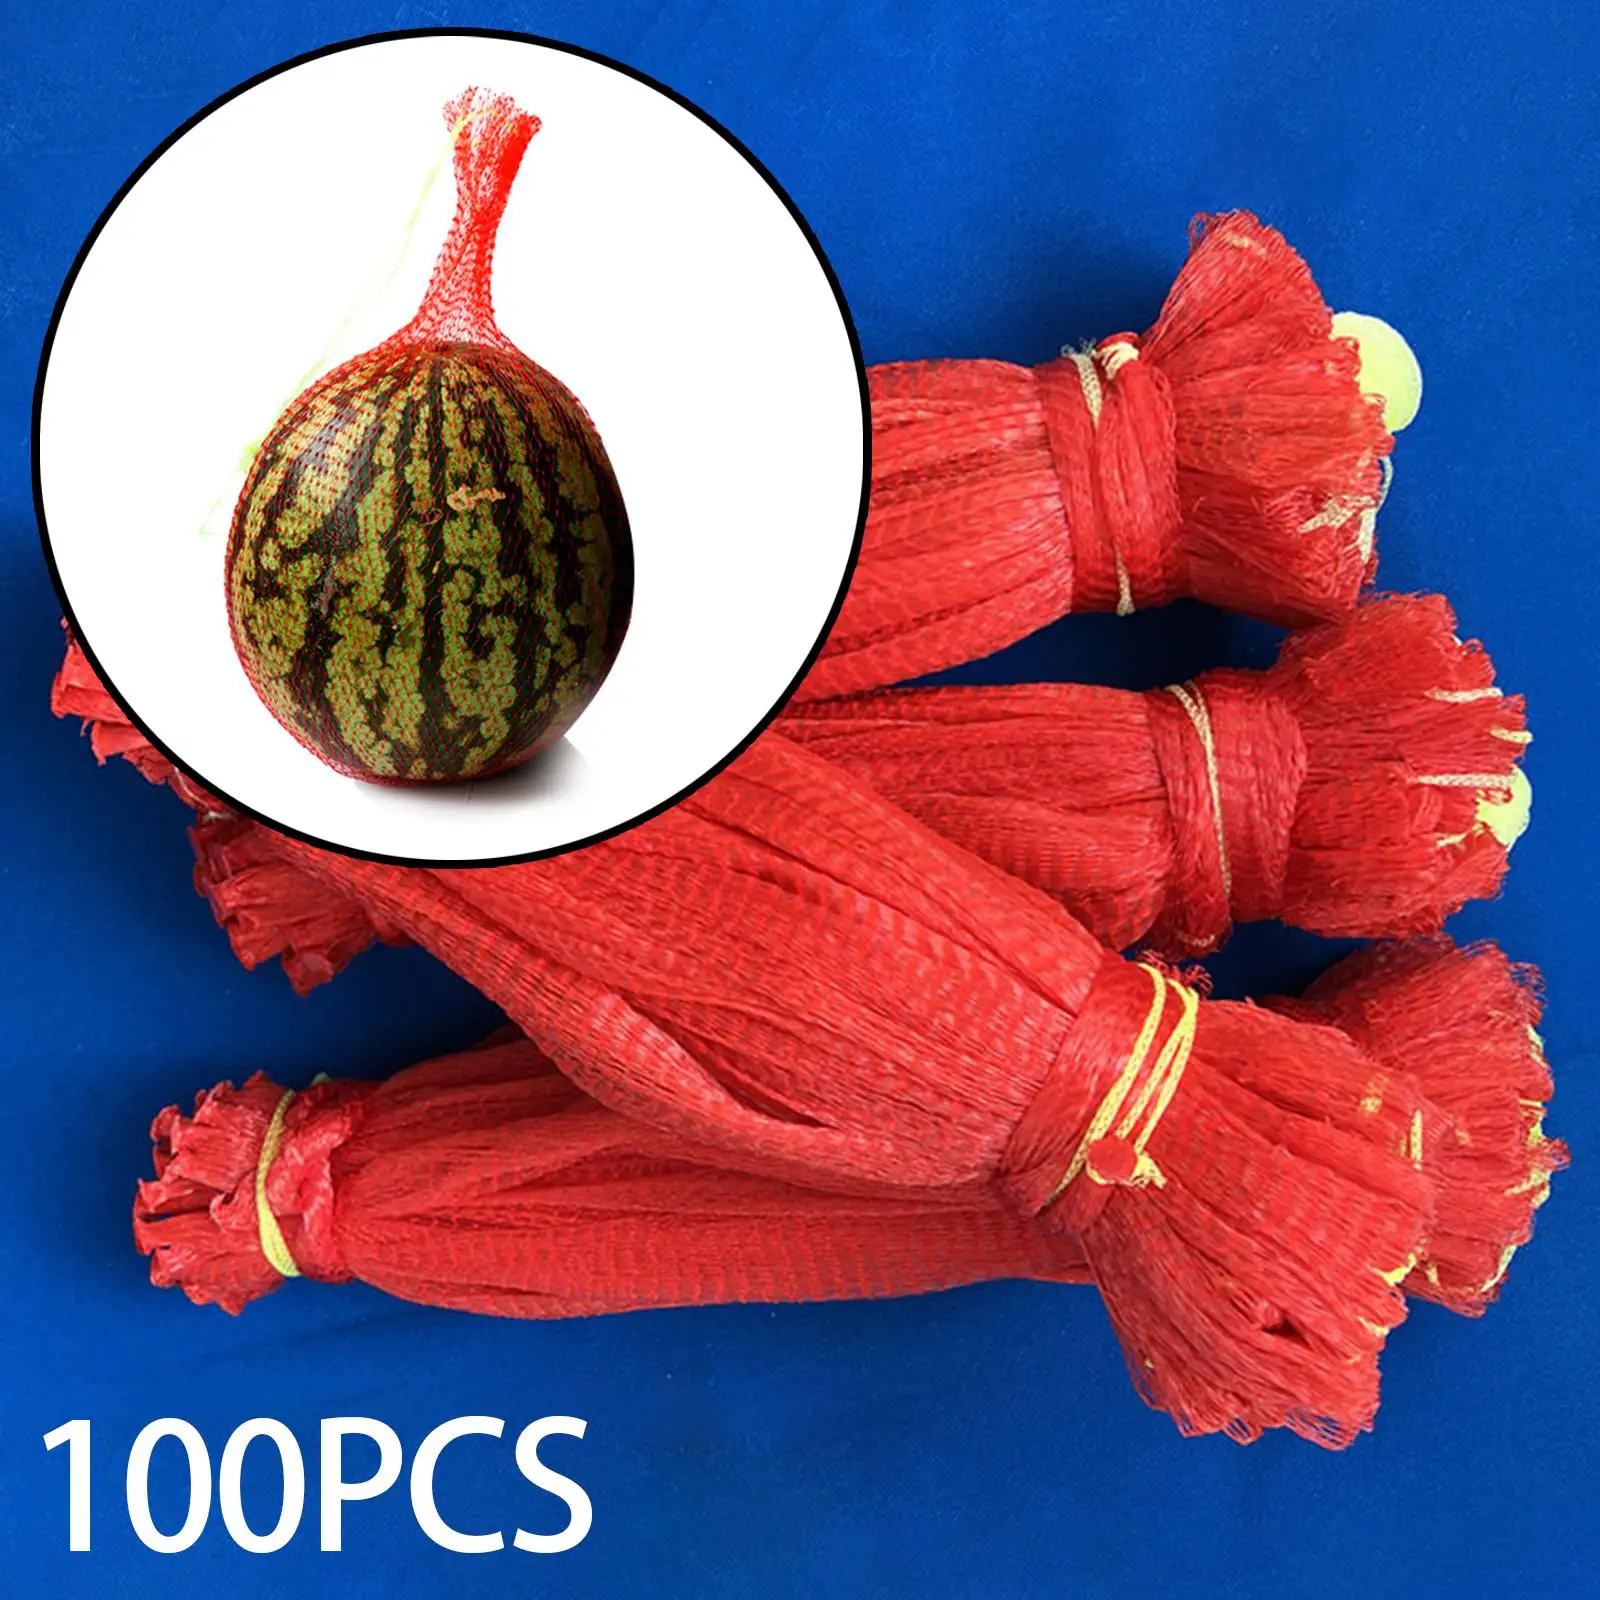 100Pcs Thicken Melon Nets Reusable Cantaloupes Mesh Net Hammocks Hanging Watermelon Net Bags for Honeydew Melon Cucumbers Garden